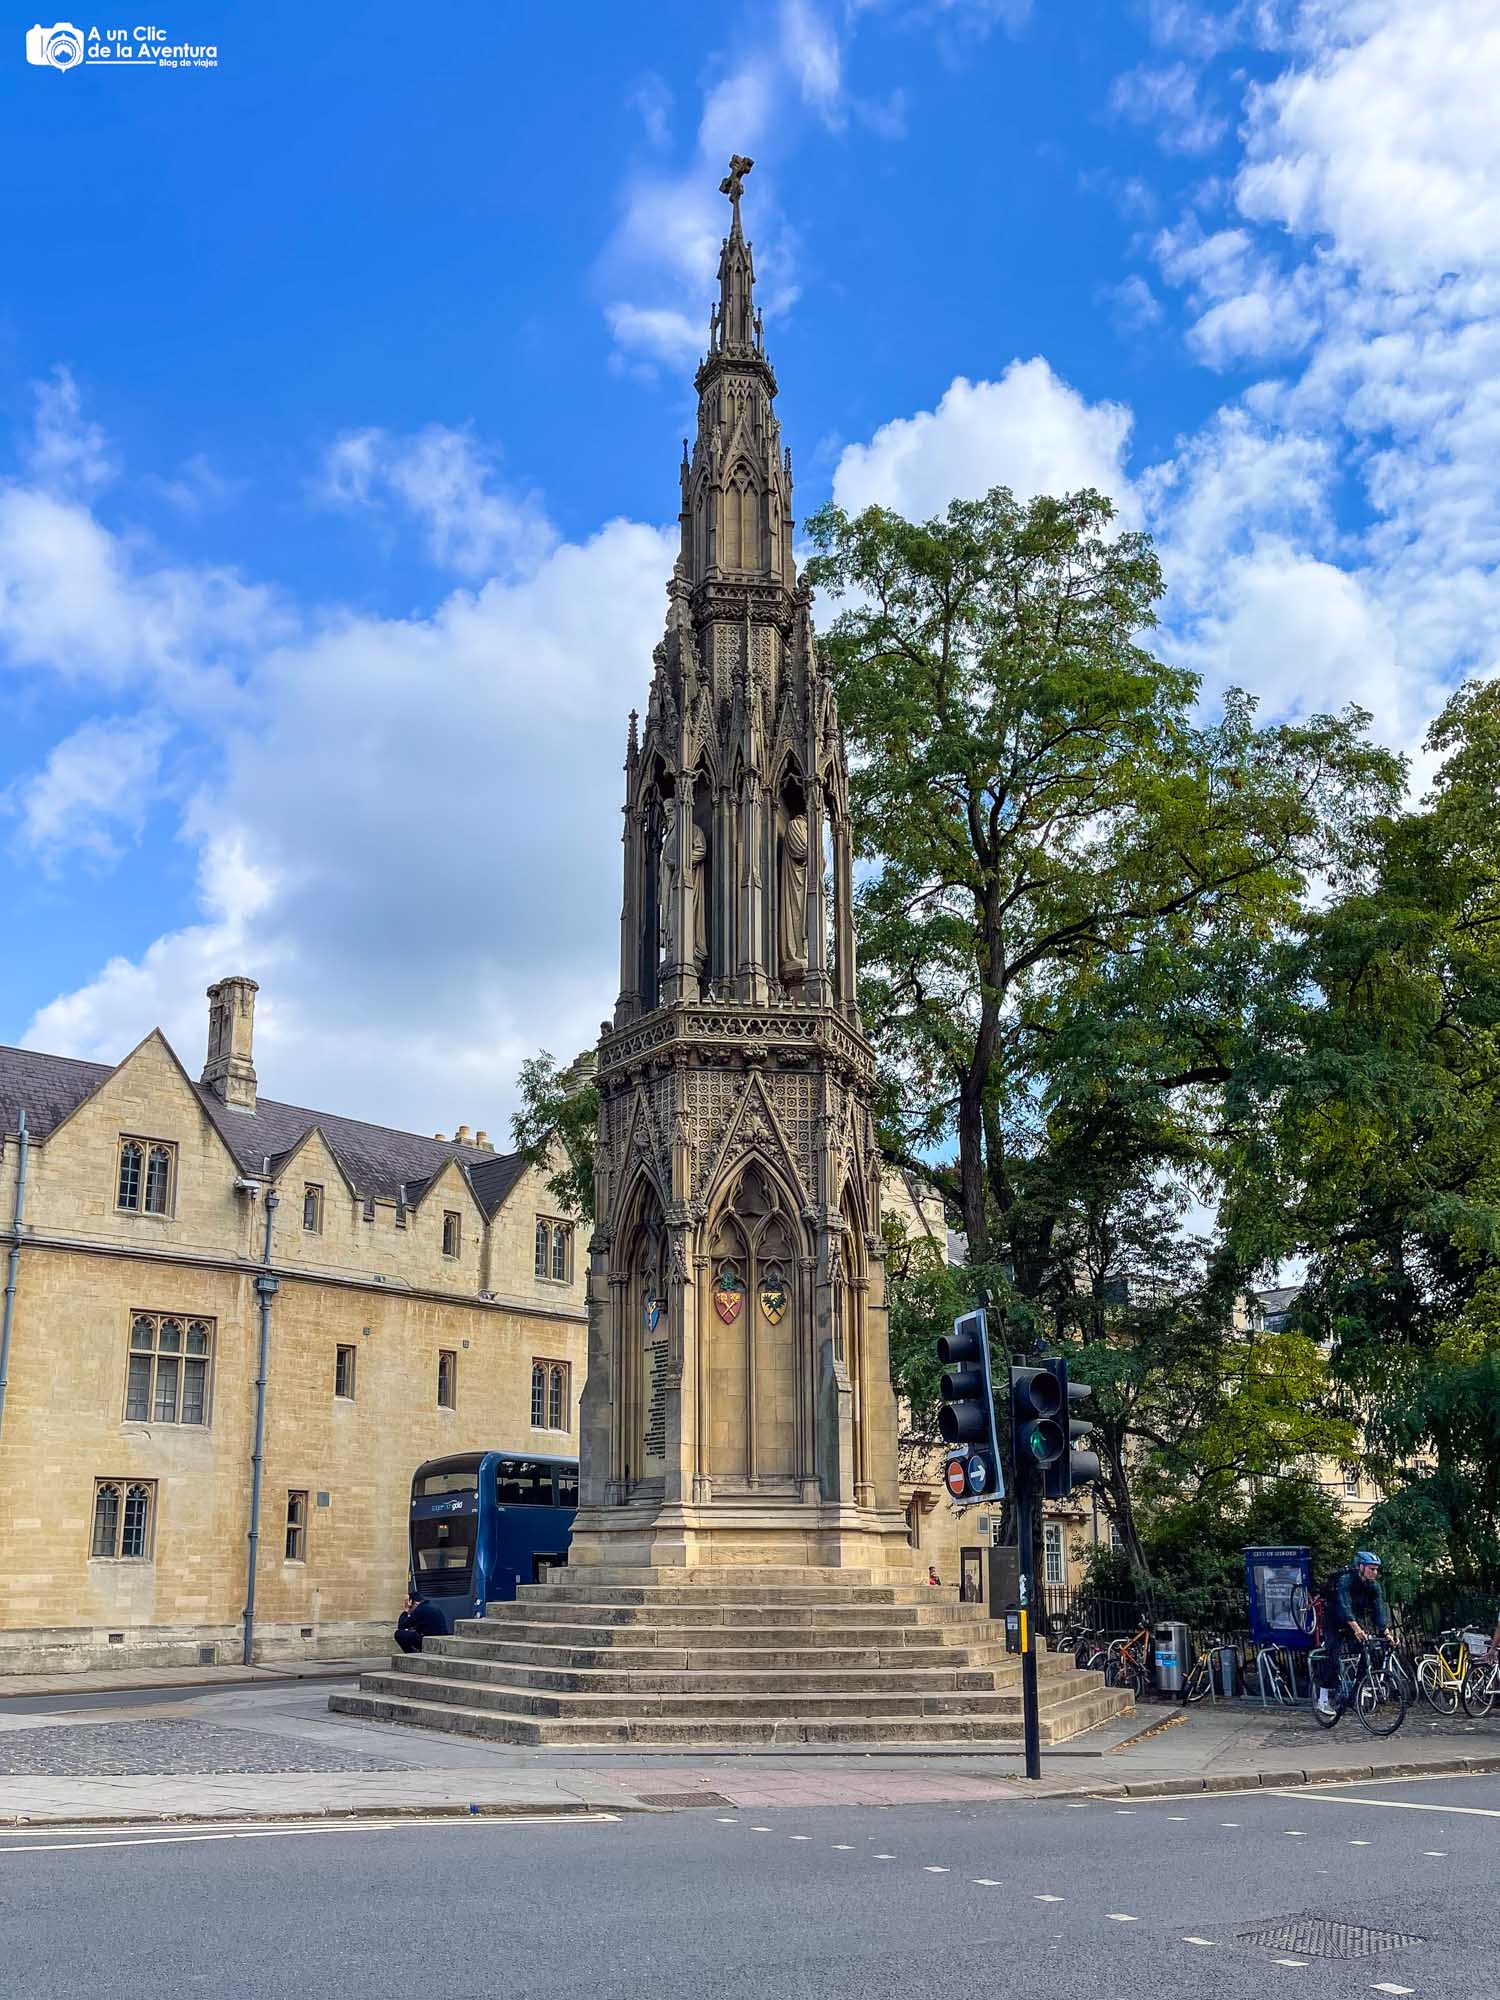 Martyrs' Memorial, qué ver en Oxford